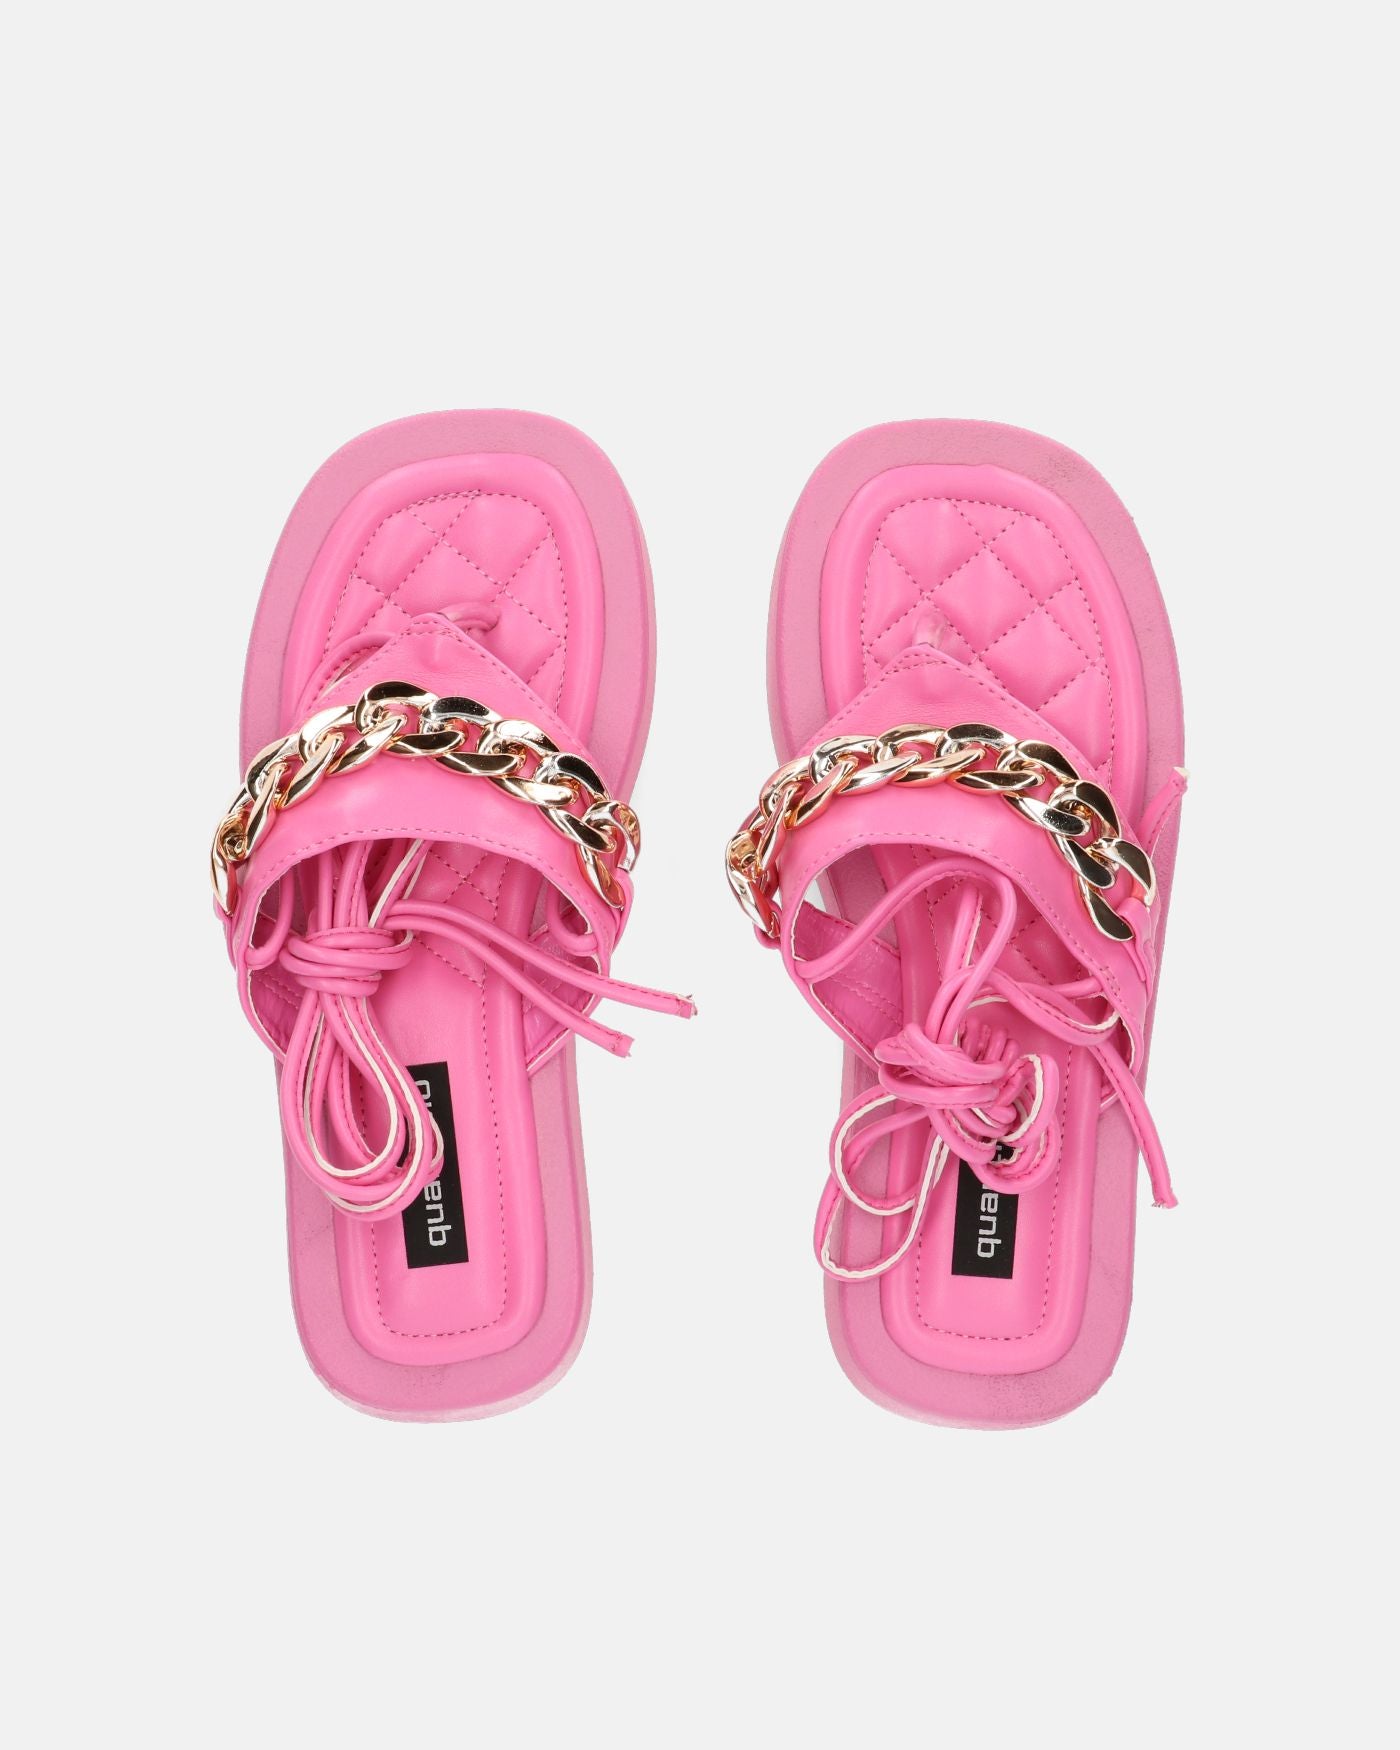 AURA - sandalias planas rosa con cadena dorada y cordones